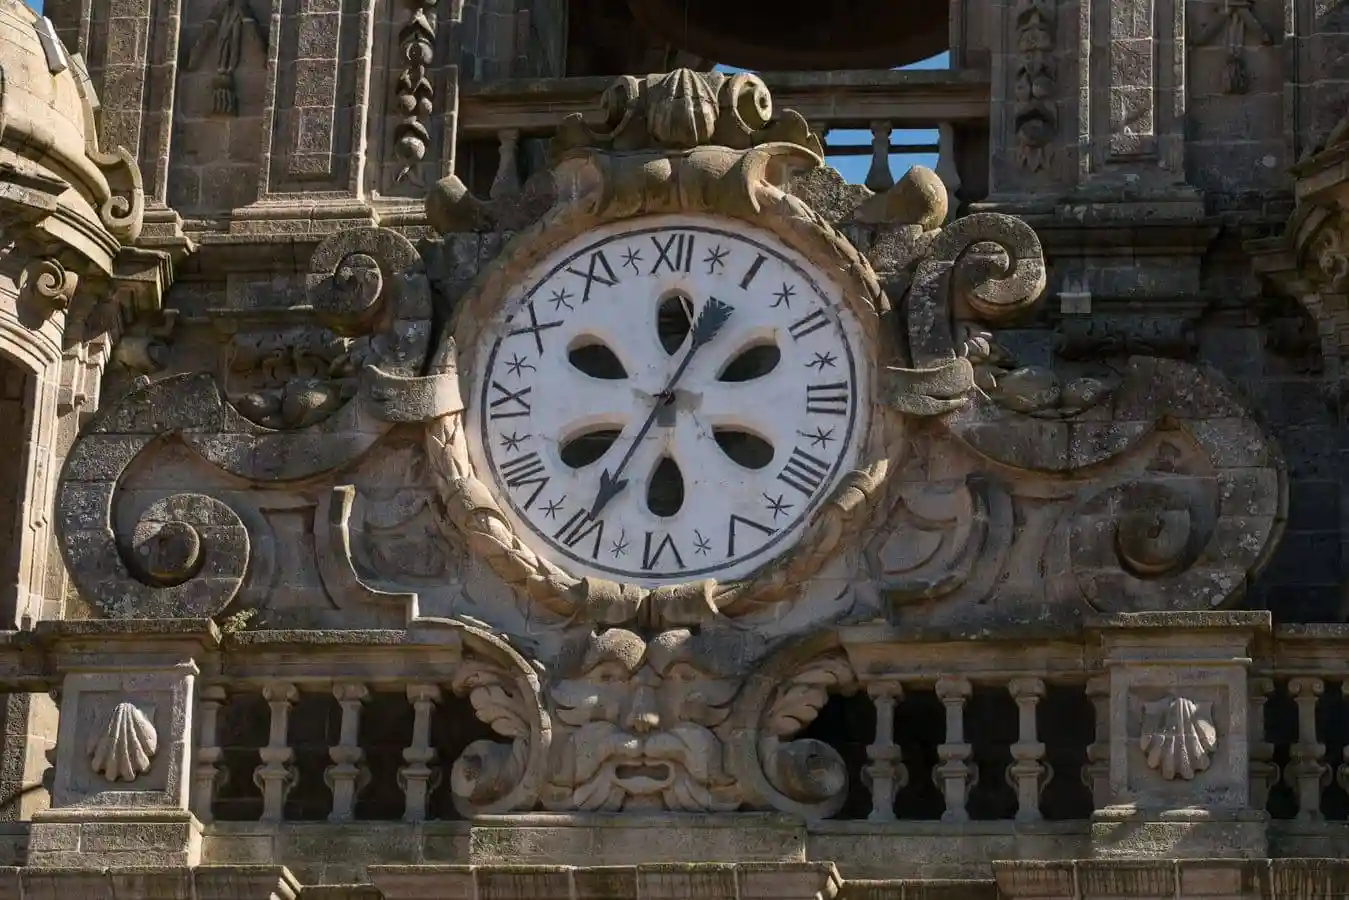 Detalle de la esfera del reloj y de la decoración barroca a su alrededor